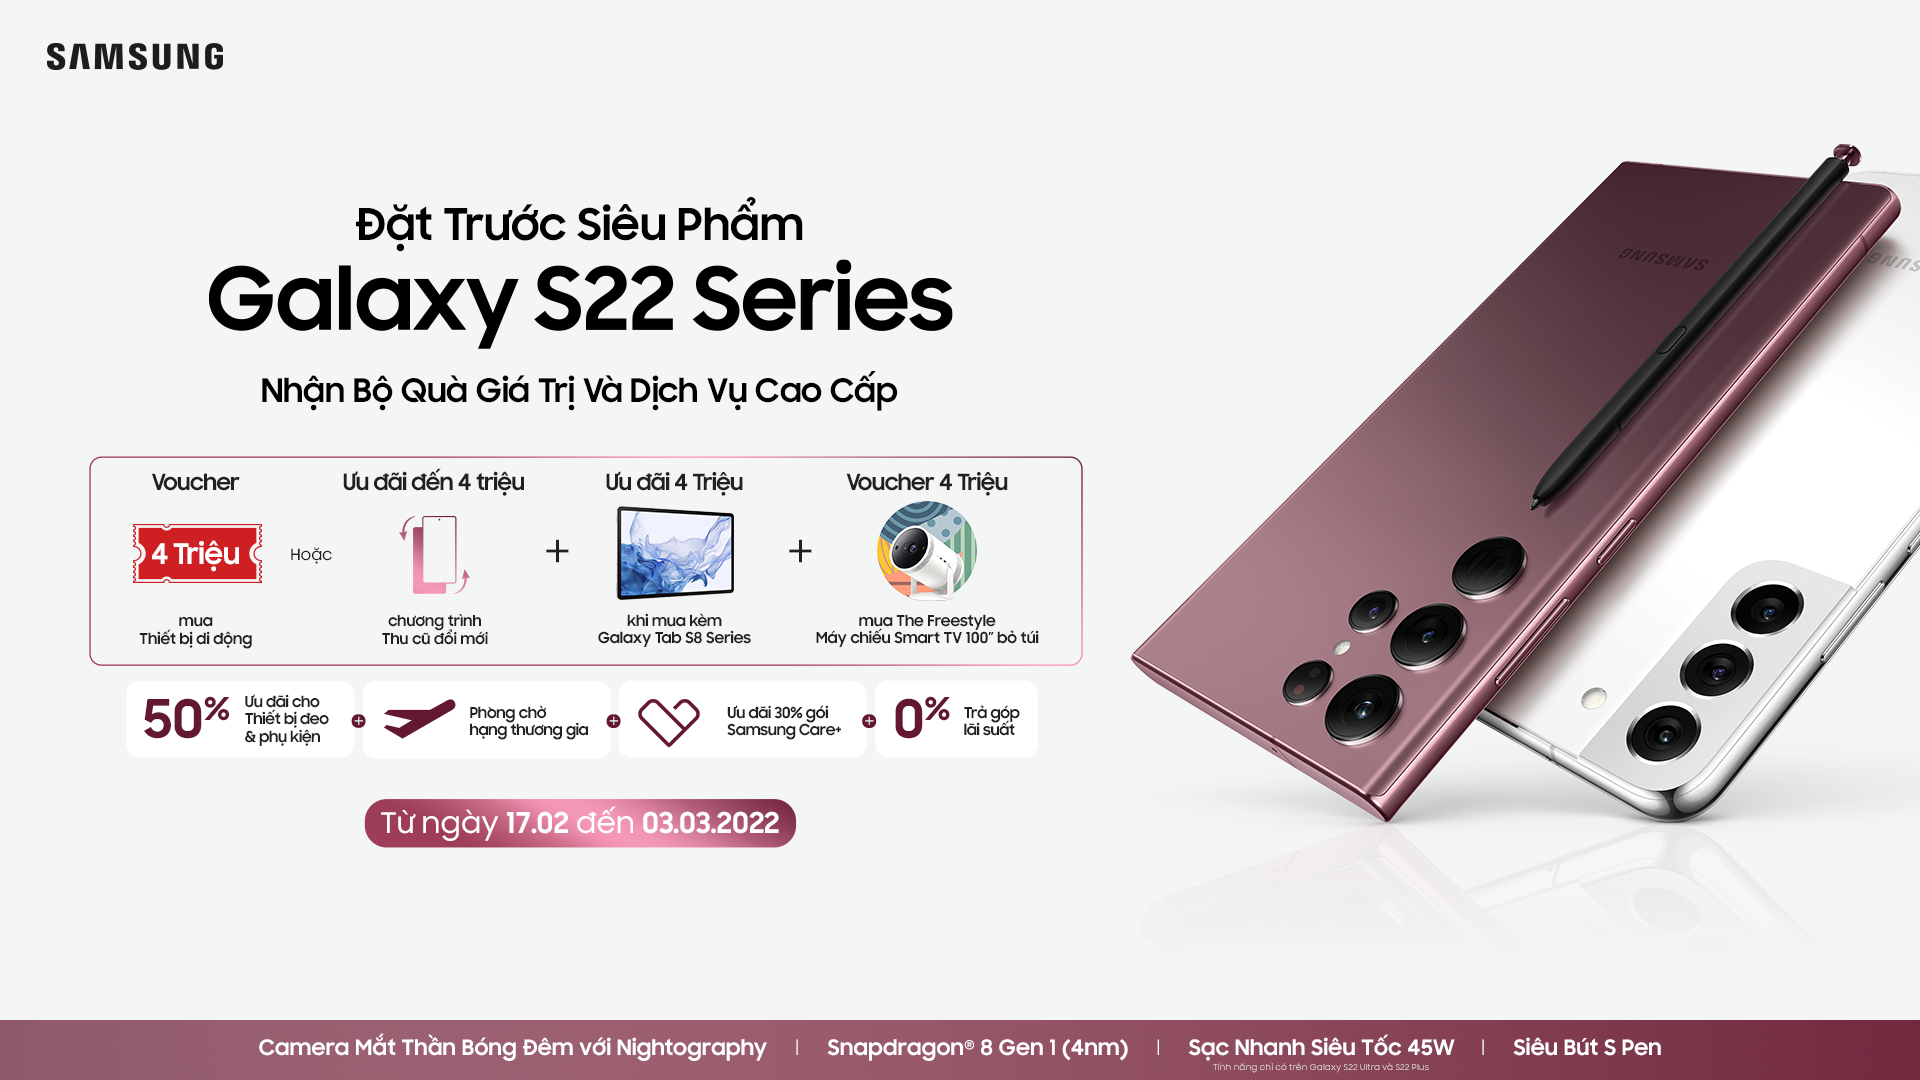 Galaxy S22 series chính thức đổ bộ tại Việt Nam, giá từ 21,990,000 VND